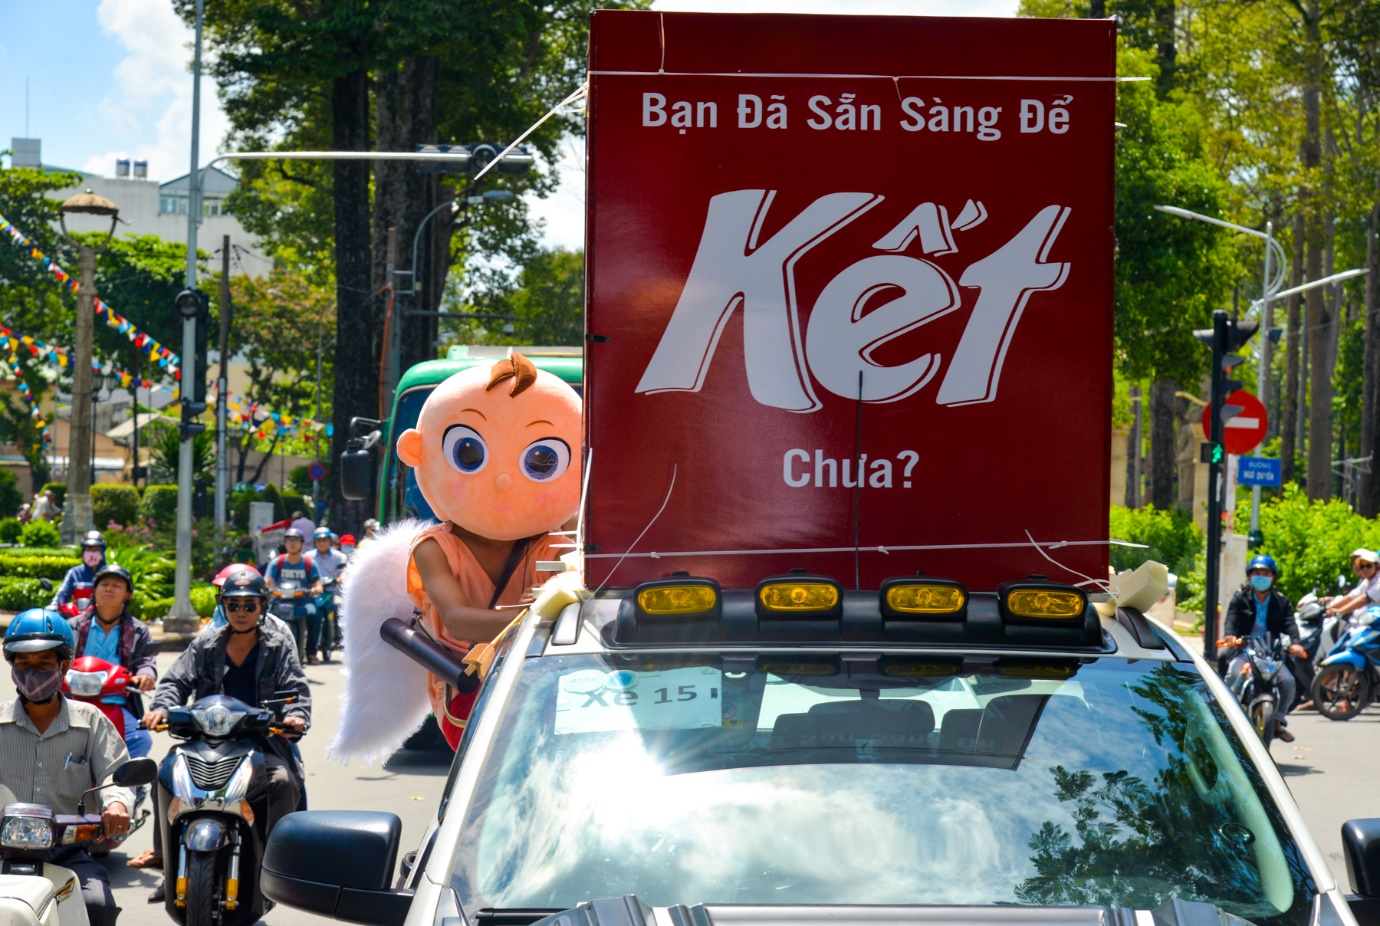 Người Sài Gòn thích thú với dàn thần tình yêu đi “xế siêu ngầu” vòng quanh thành phố - Ảnh 2.